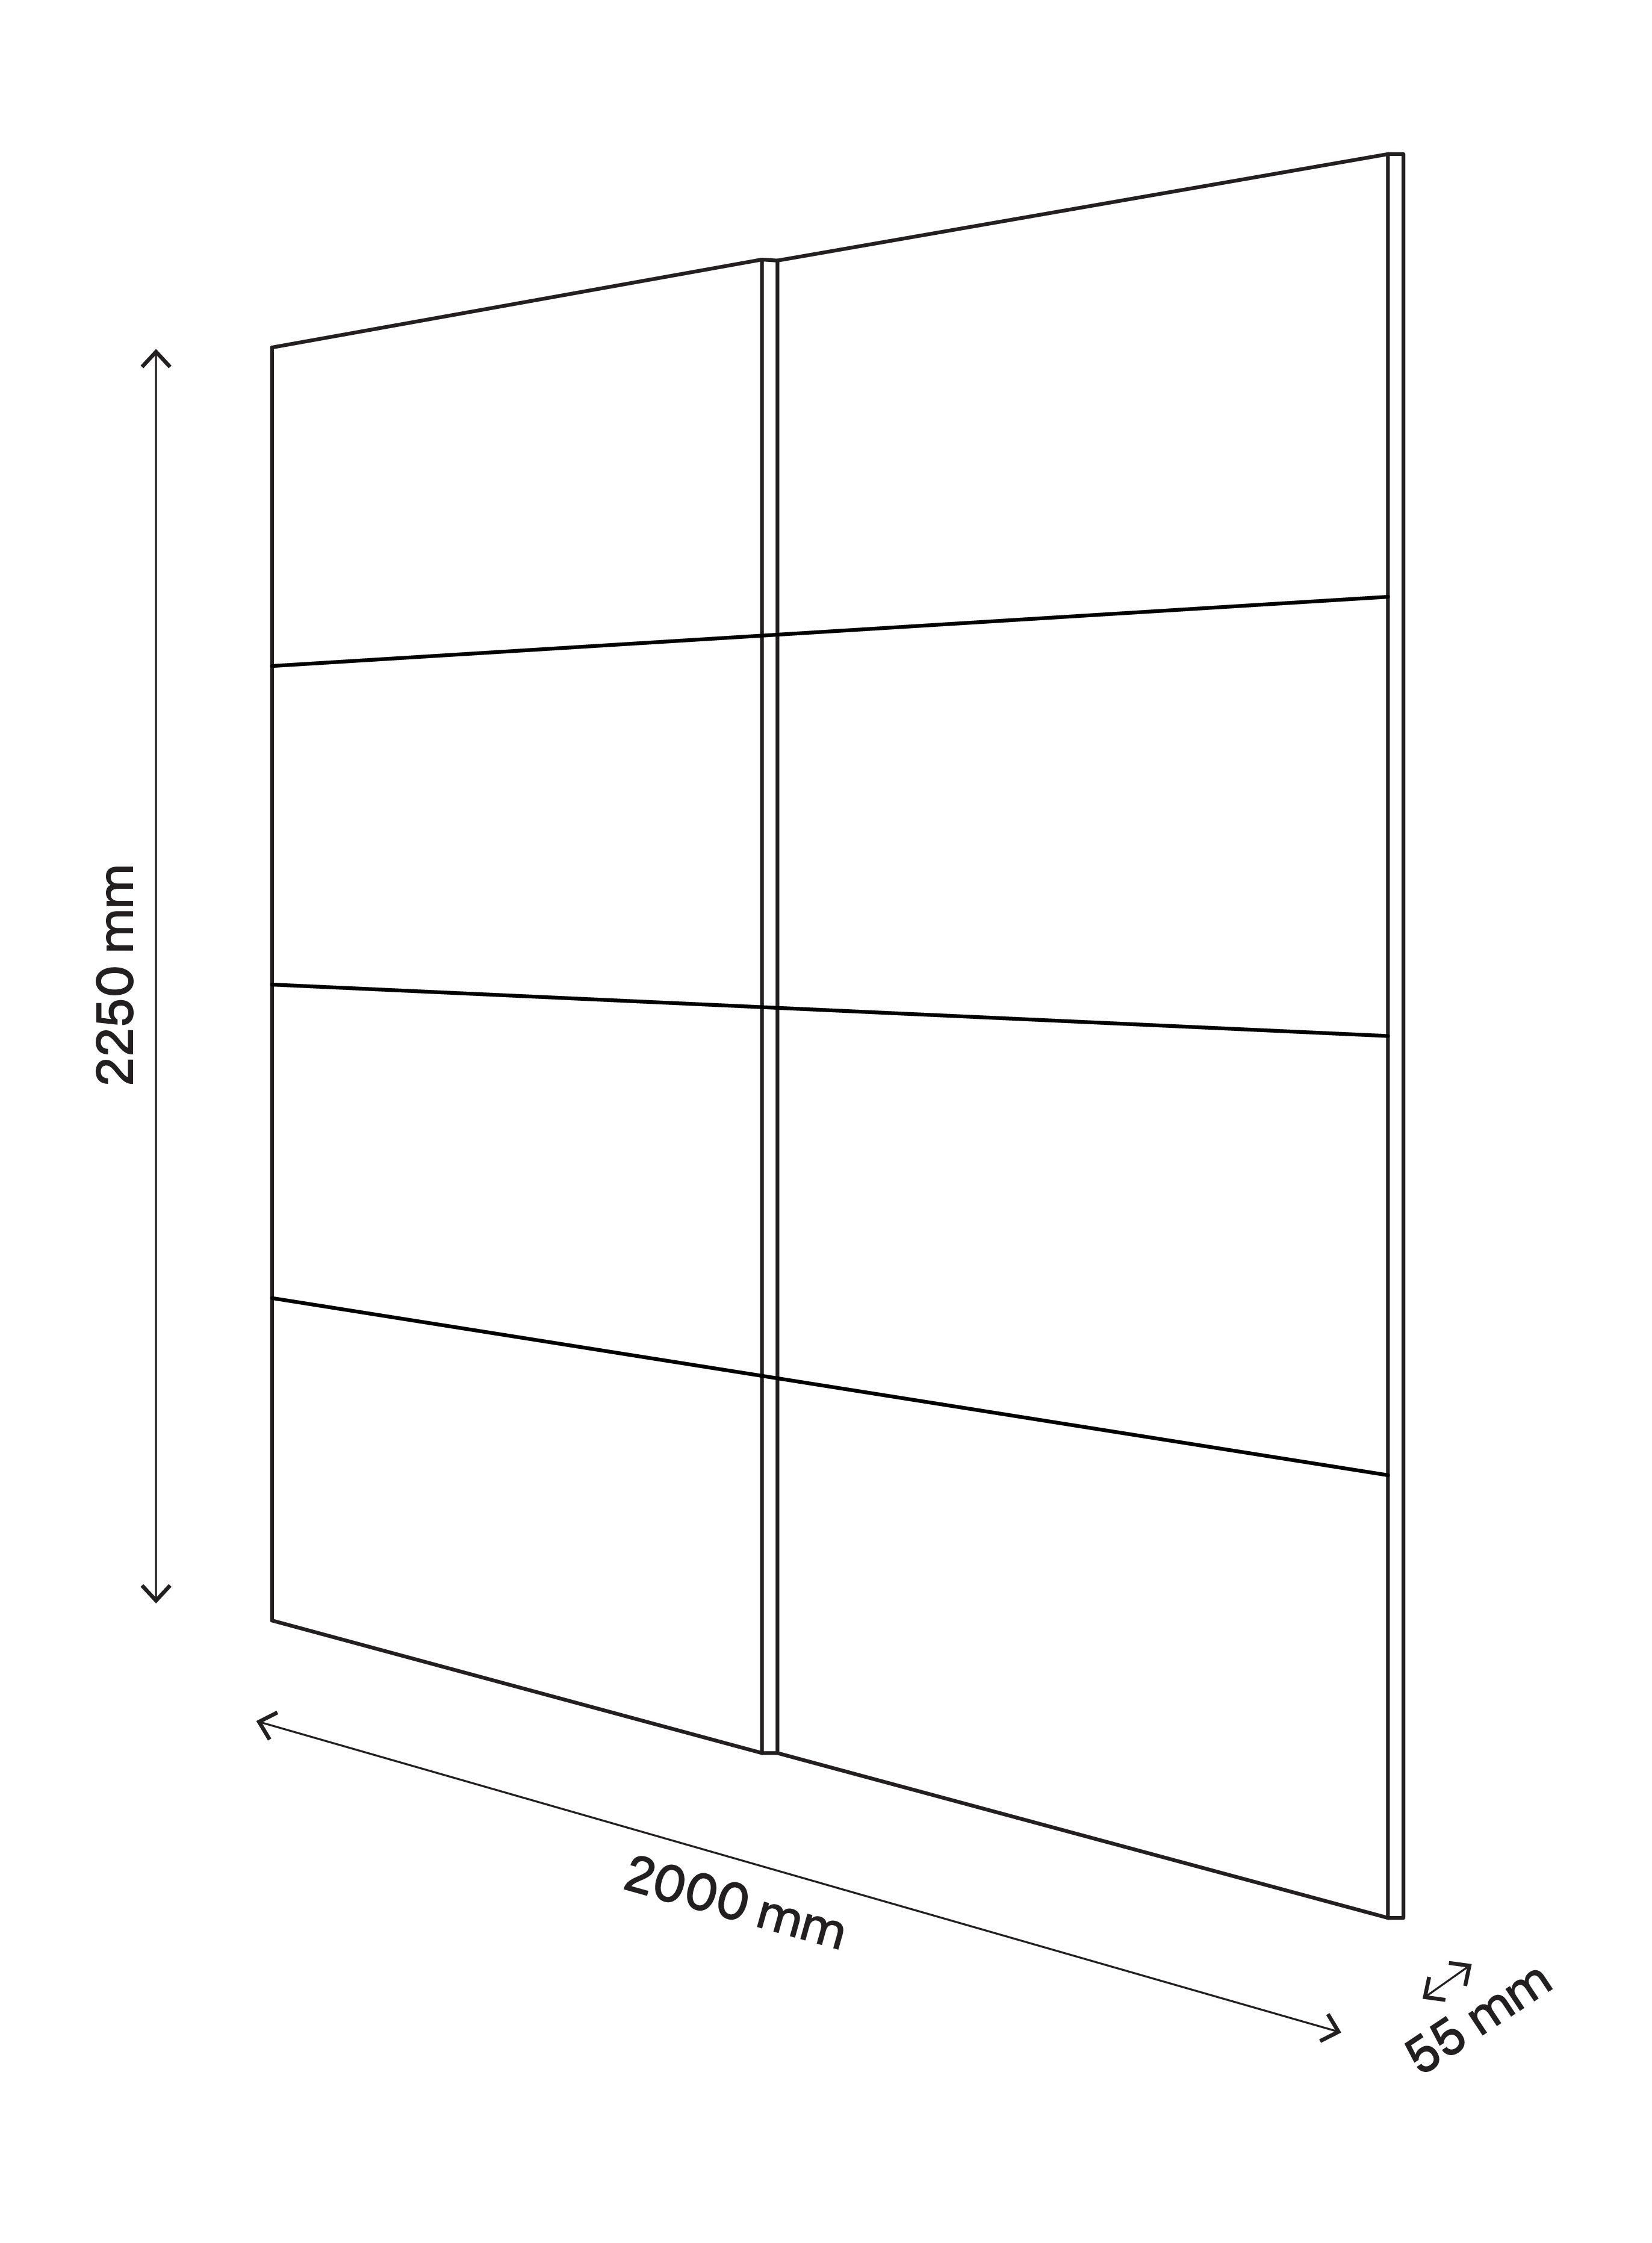 Atomia Grey oak effect 2 door Sliding Wardrobe Door kit (H)2250mm (W)2000mm